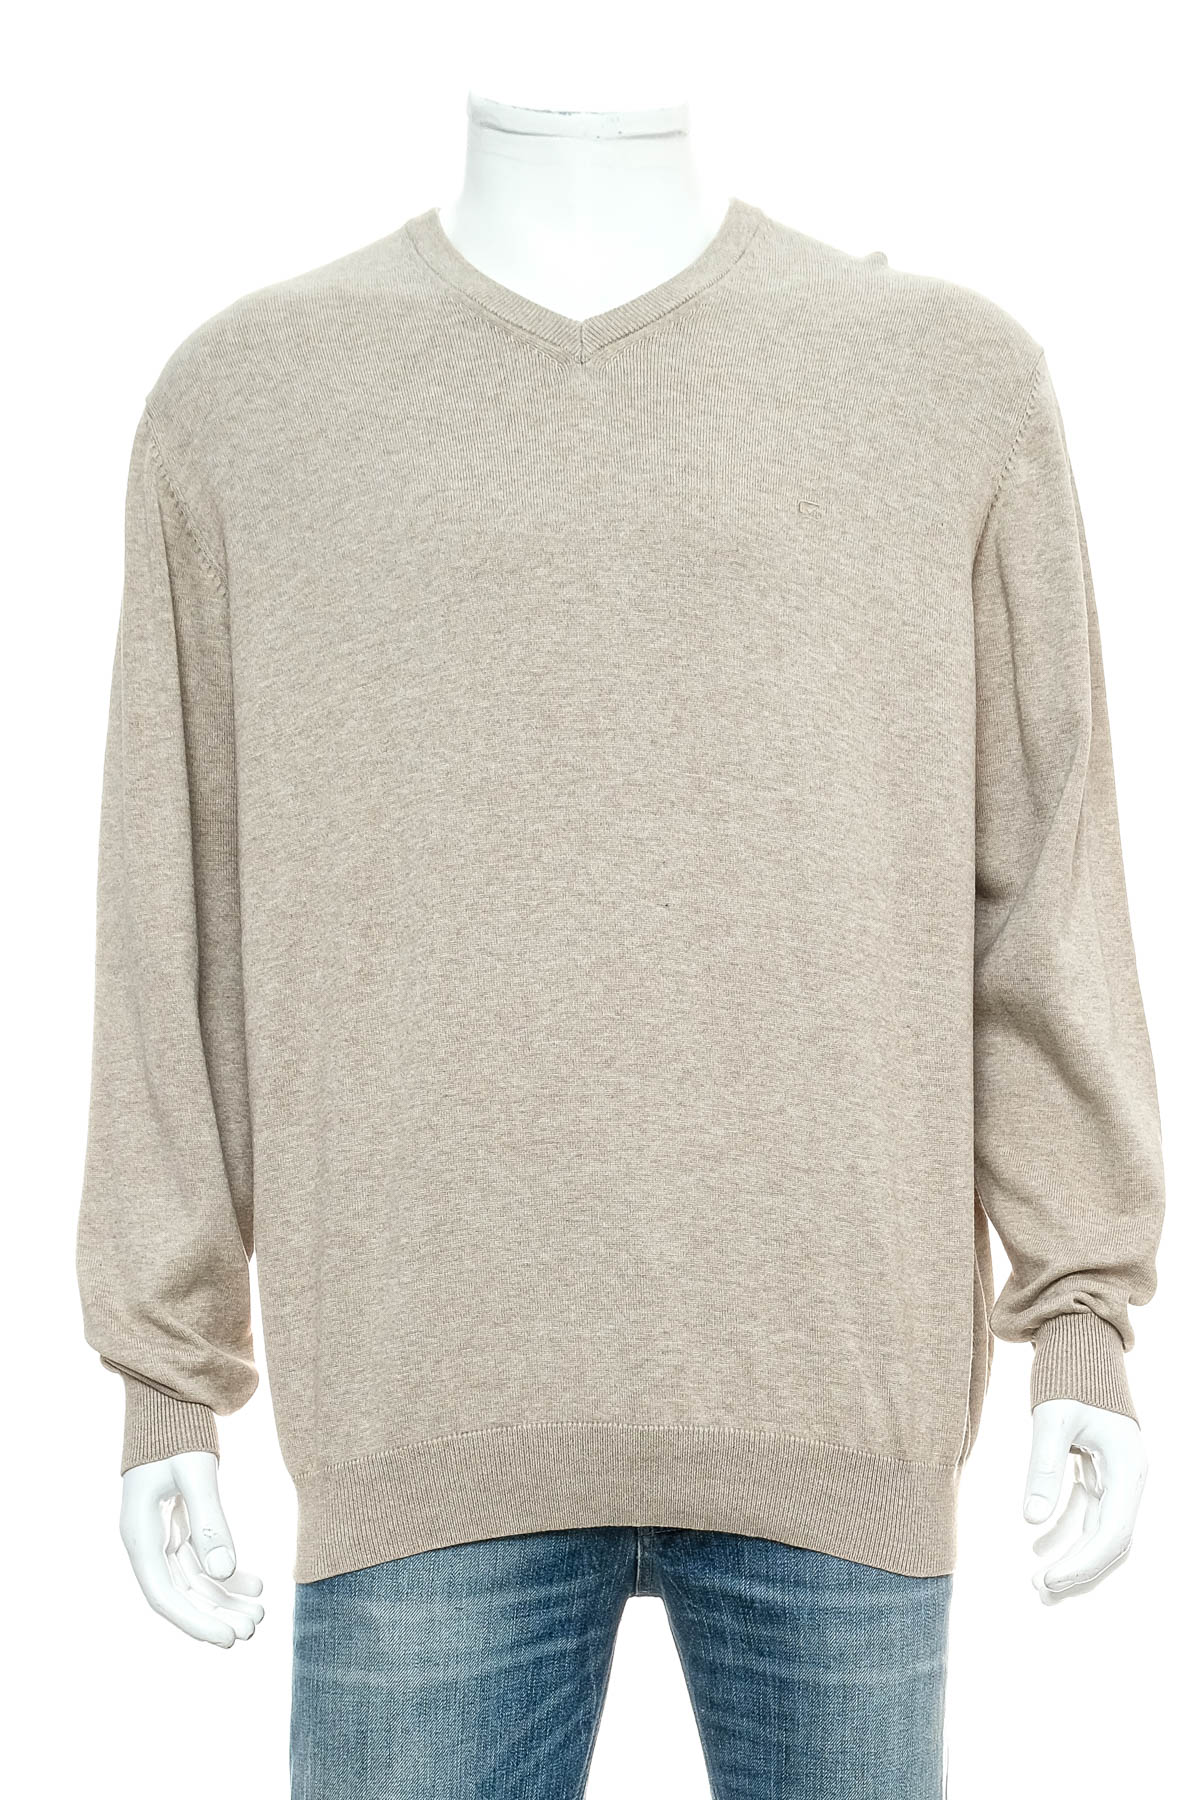 Men's sweater - Casa Moda - 0